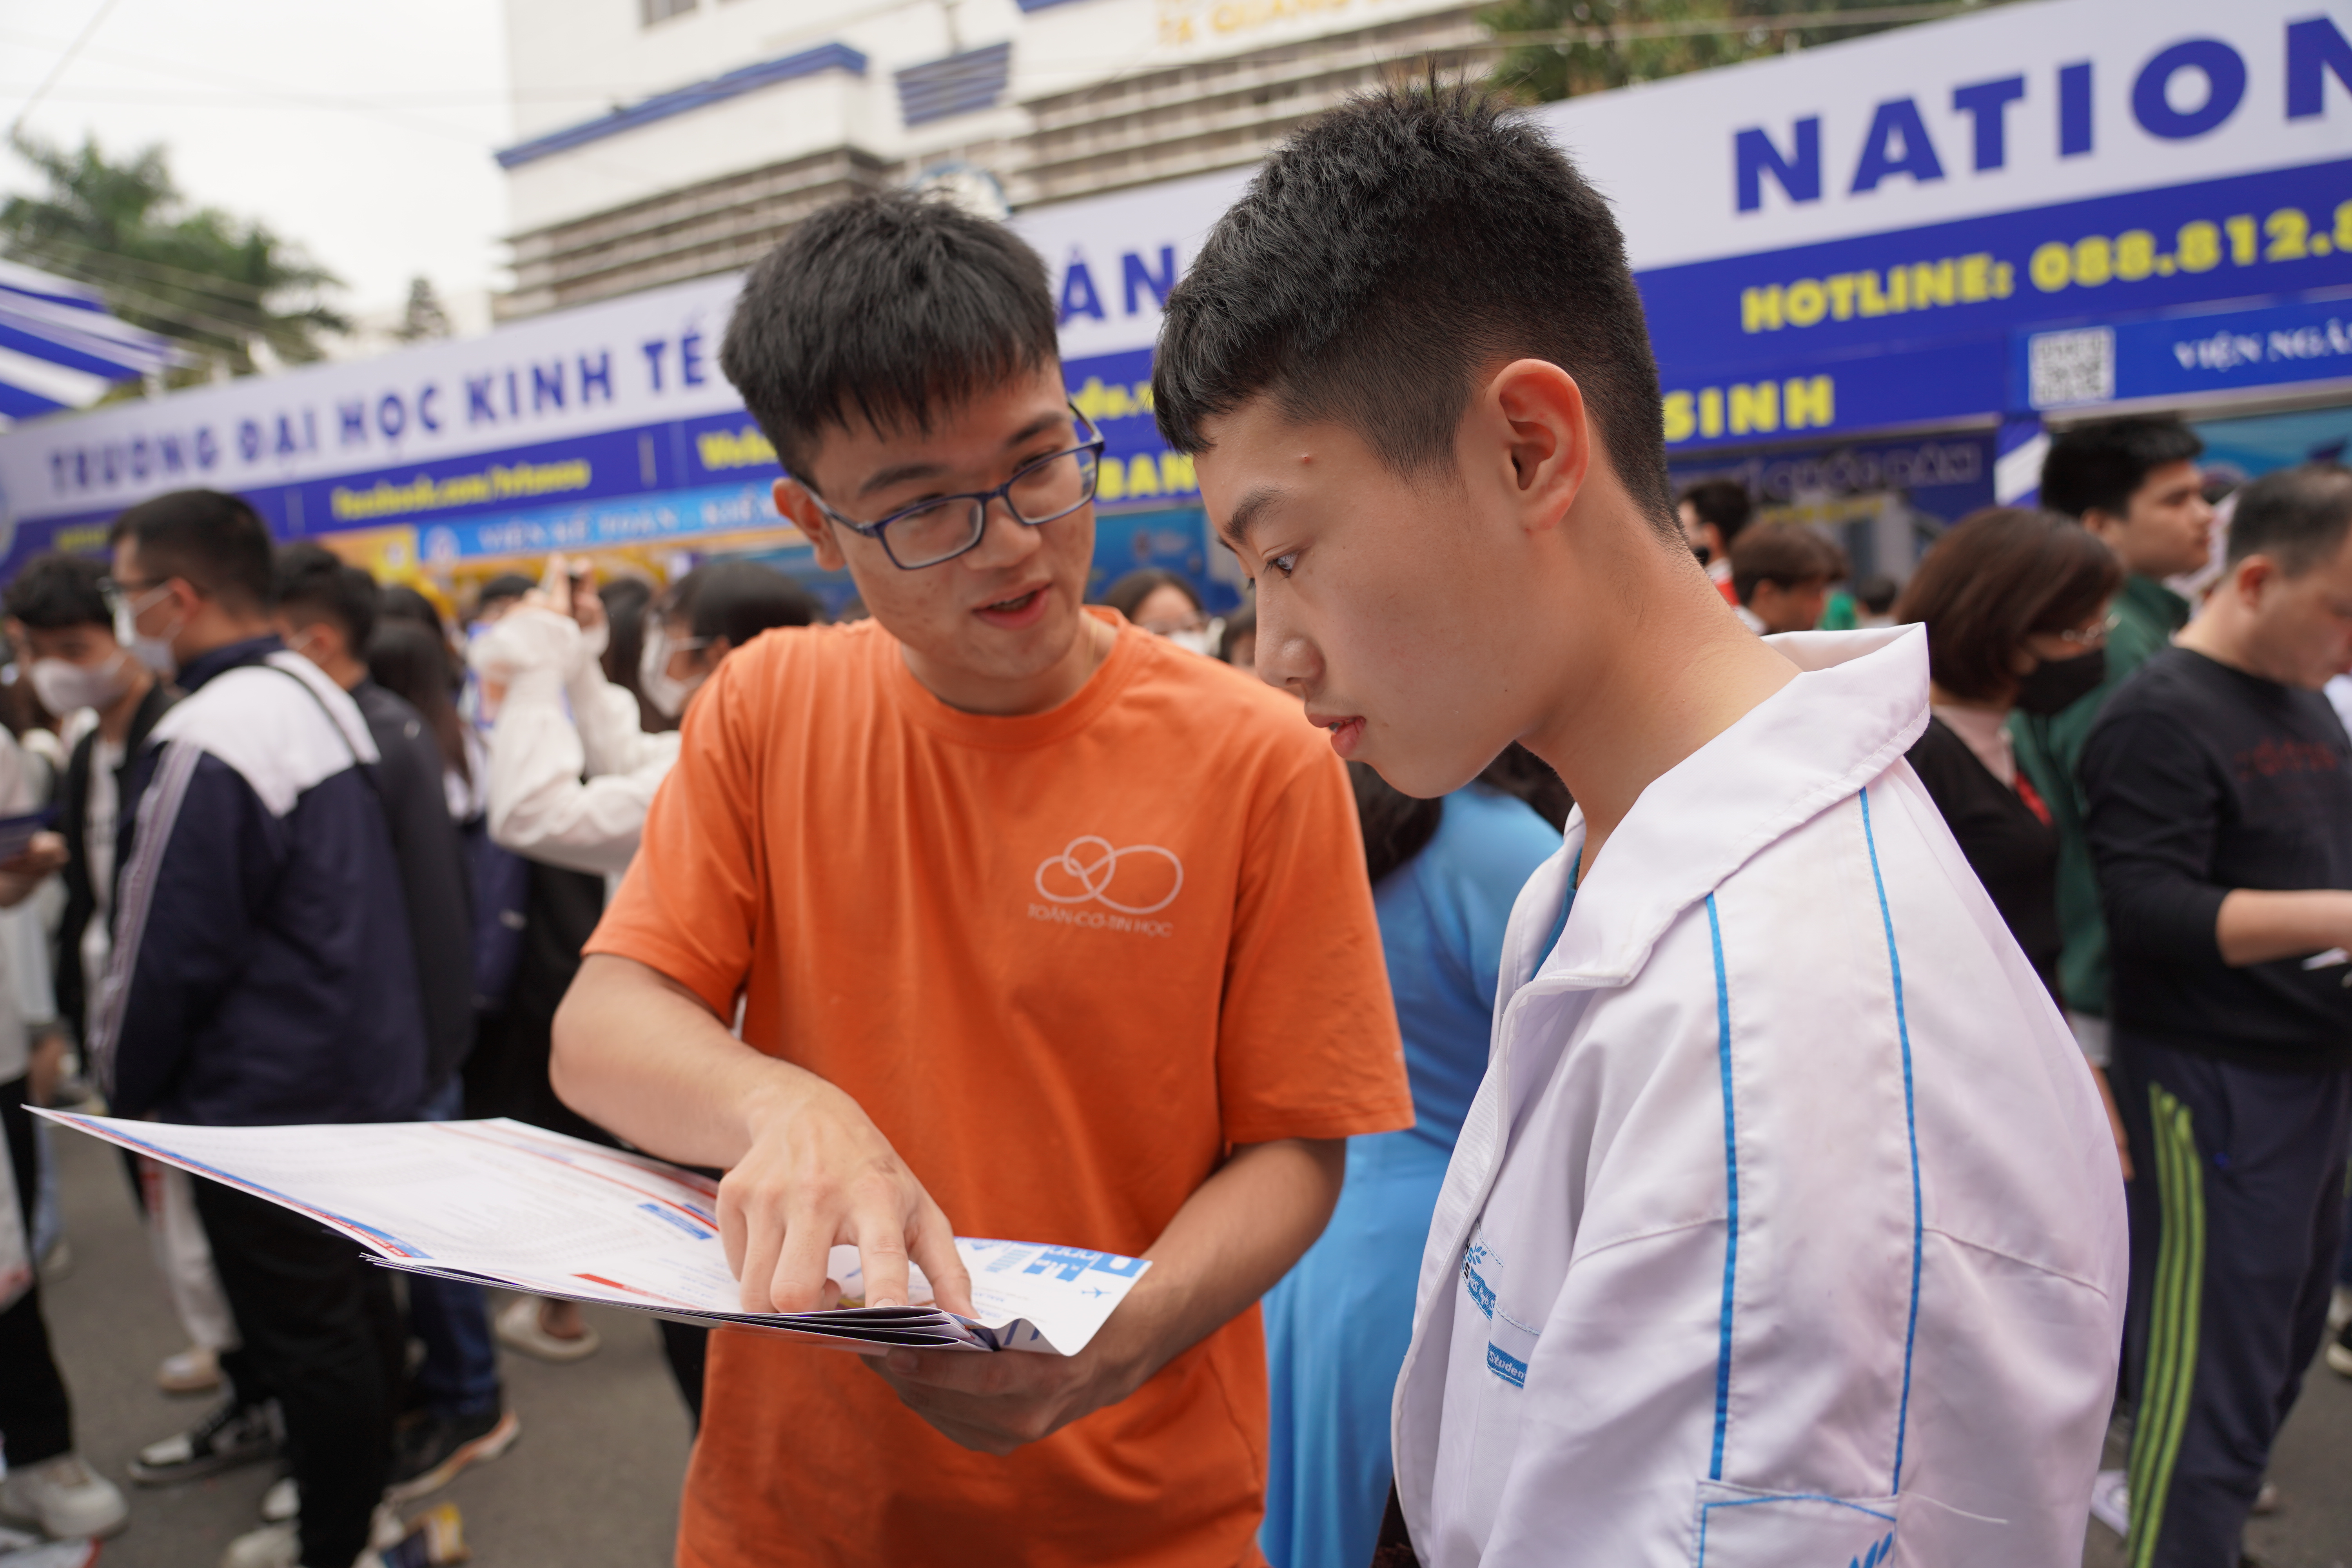 Ngày hội Tư vấn tuyển sinh – Hướng nghiệp 2023 tại Hà Nội: Nhiều ngành học của Trường Đại học Khoa học Tự nhiên được học sinh đặc biệt quan tâm